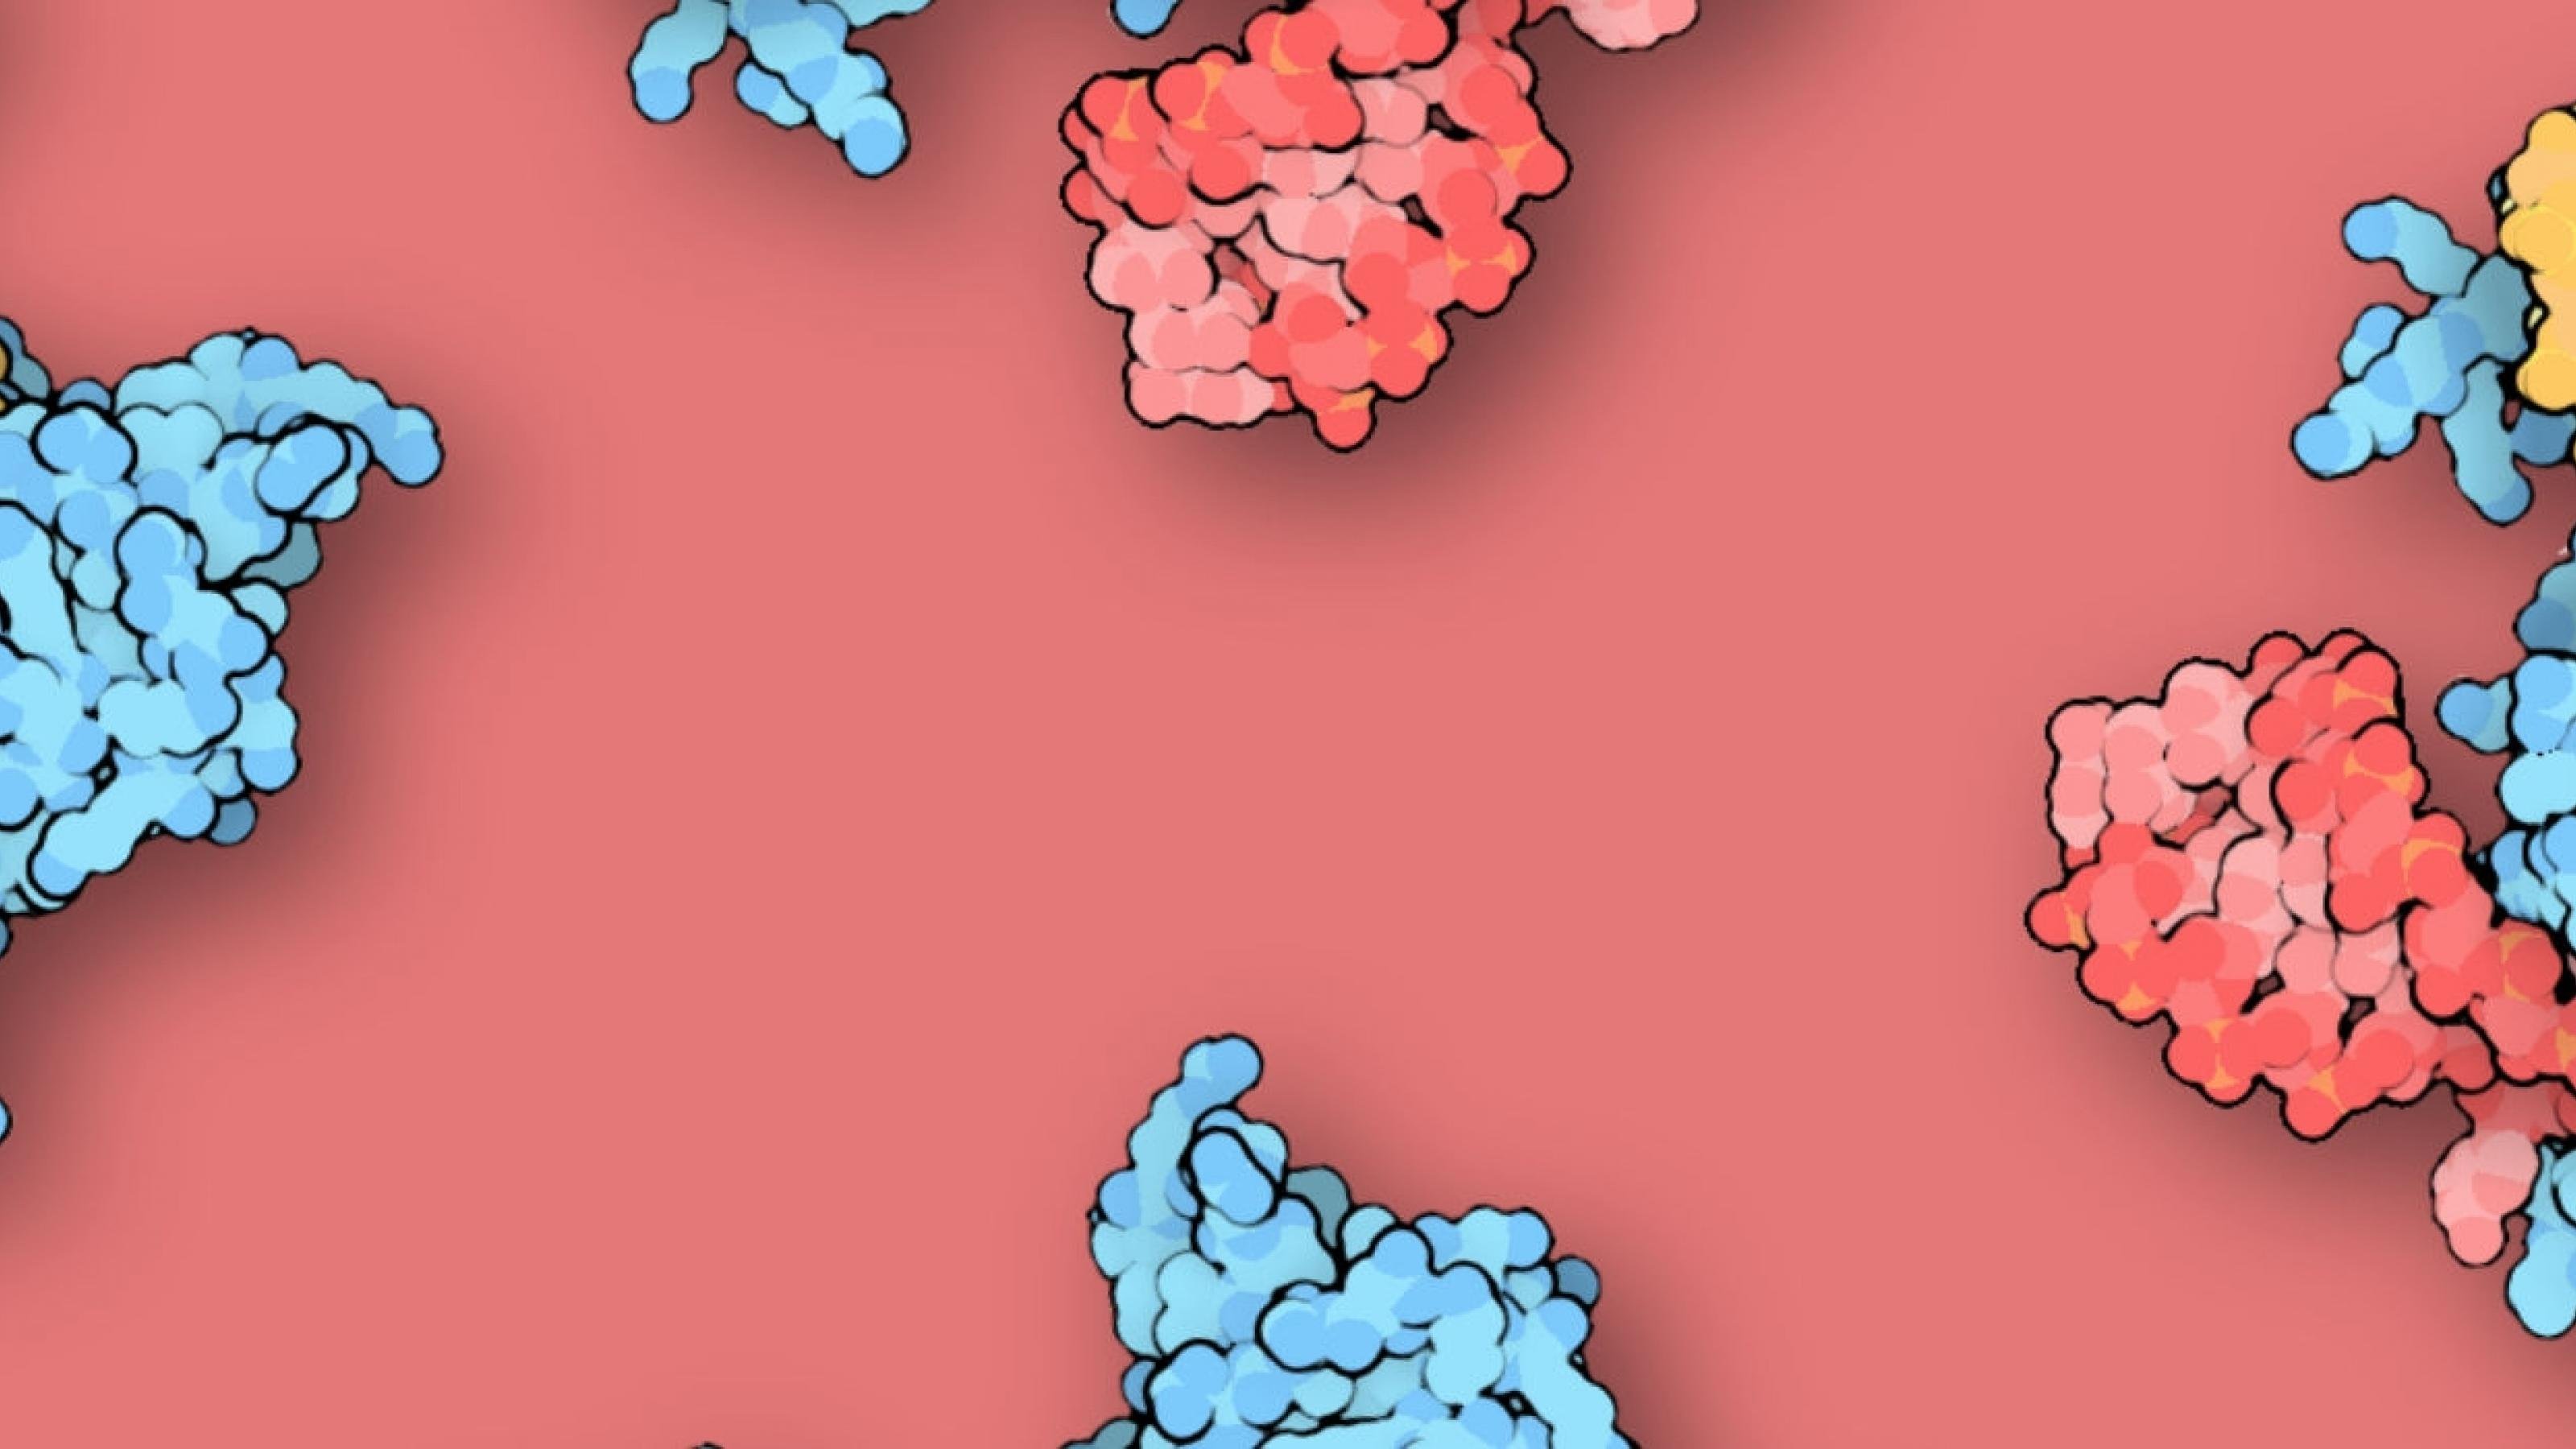 Grafiken des Cas9-Proteins umfliegen den Titel.